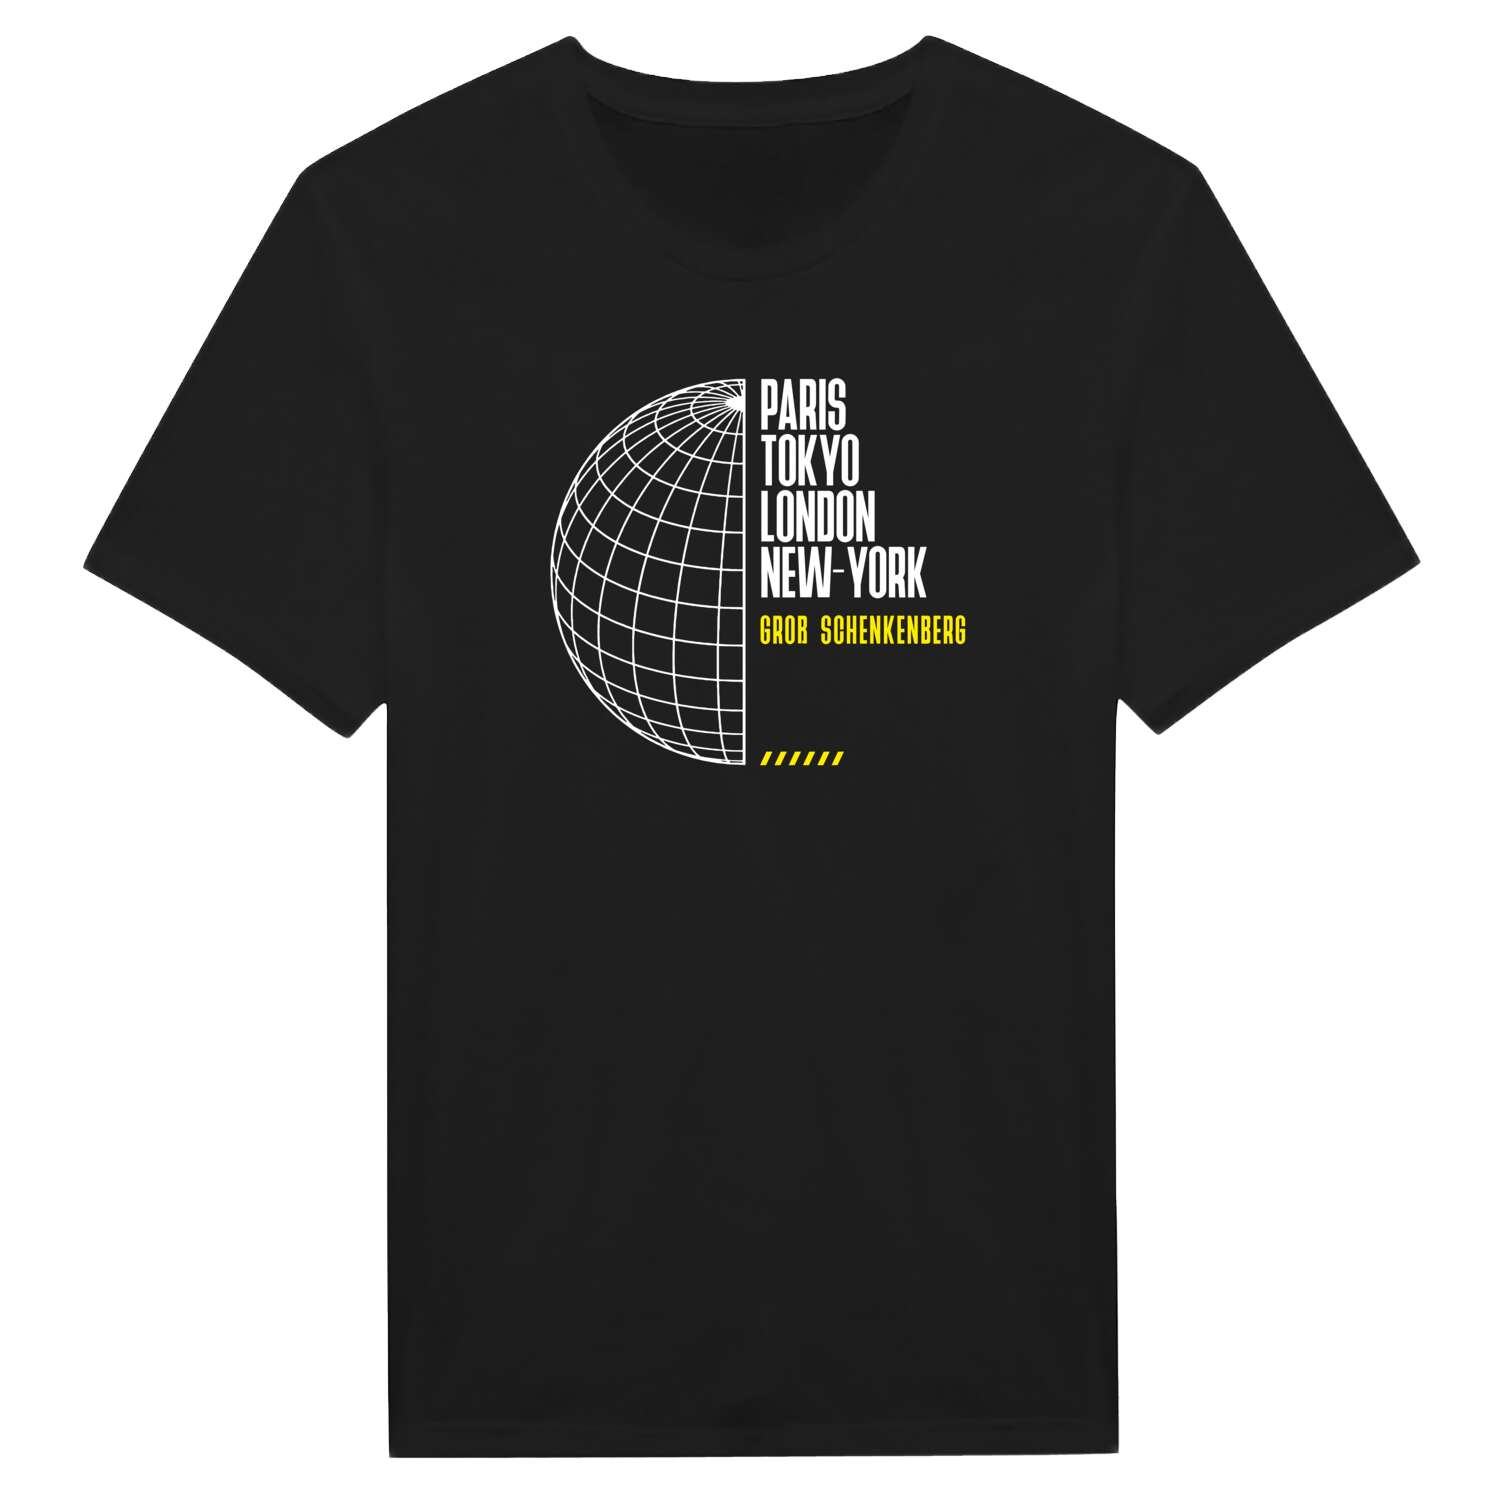 Groß Schenkenberg T-Shirt »Paris Tokyo London«